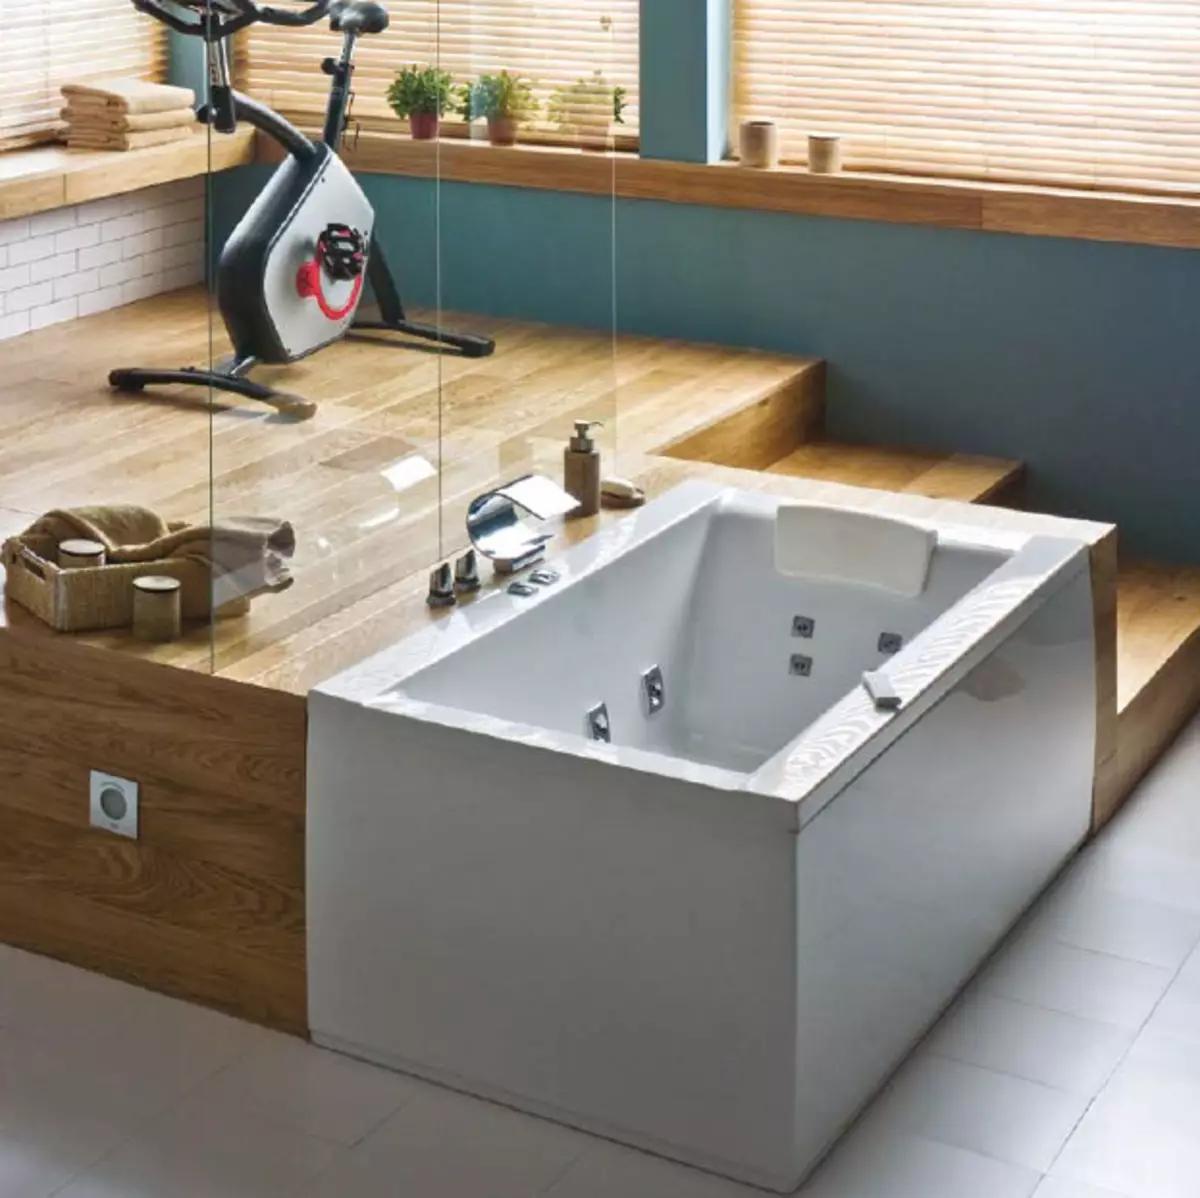 Oturan Akrilik Banyolar: 120x70 cm ve 100x70 cm boyutlu modellerin görünümü, mini banyosunun avantajları ve dezavantajları 10230_35